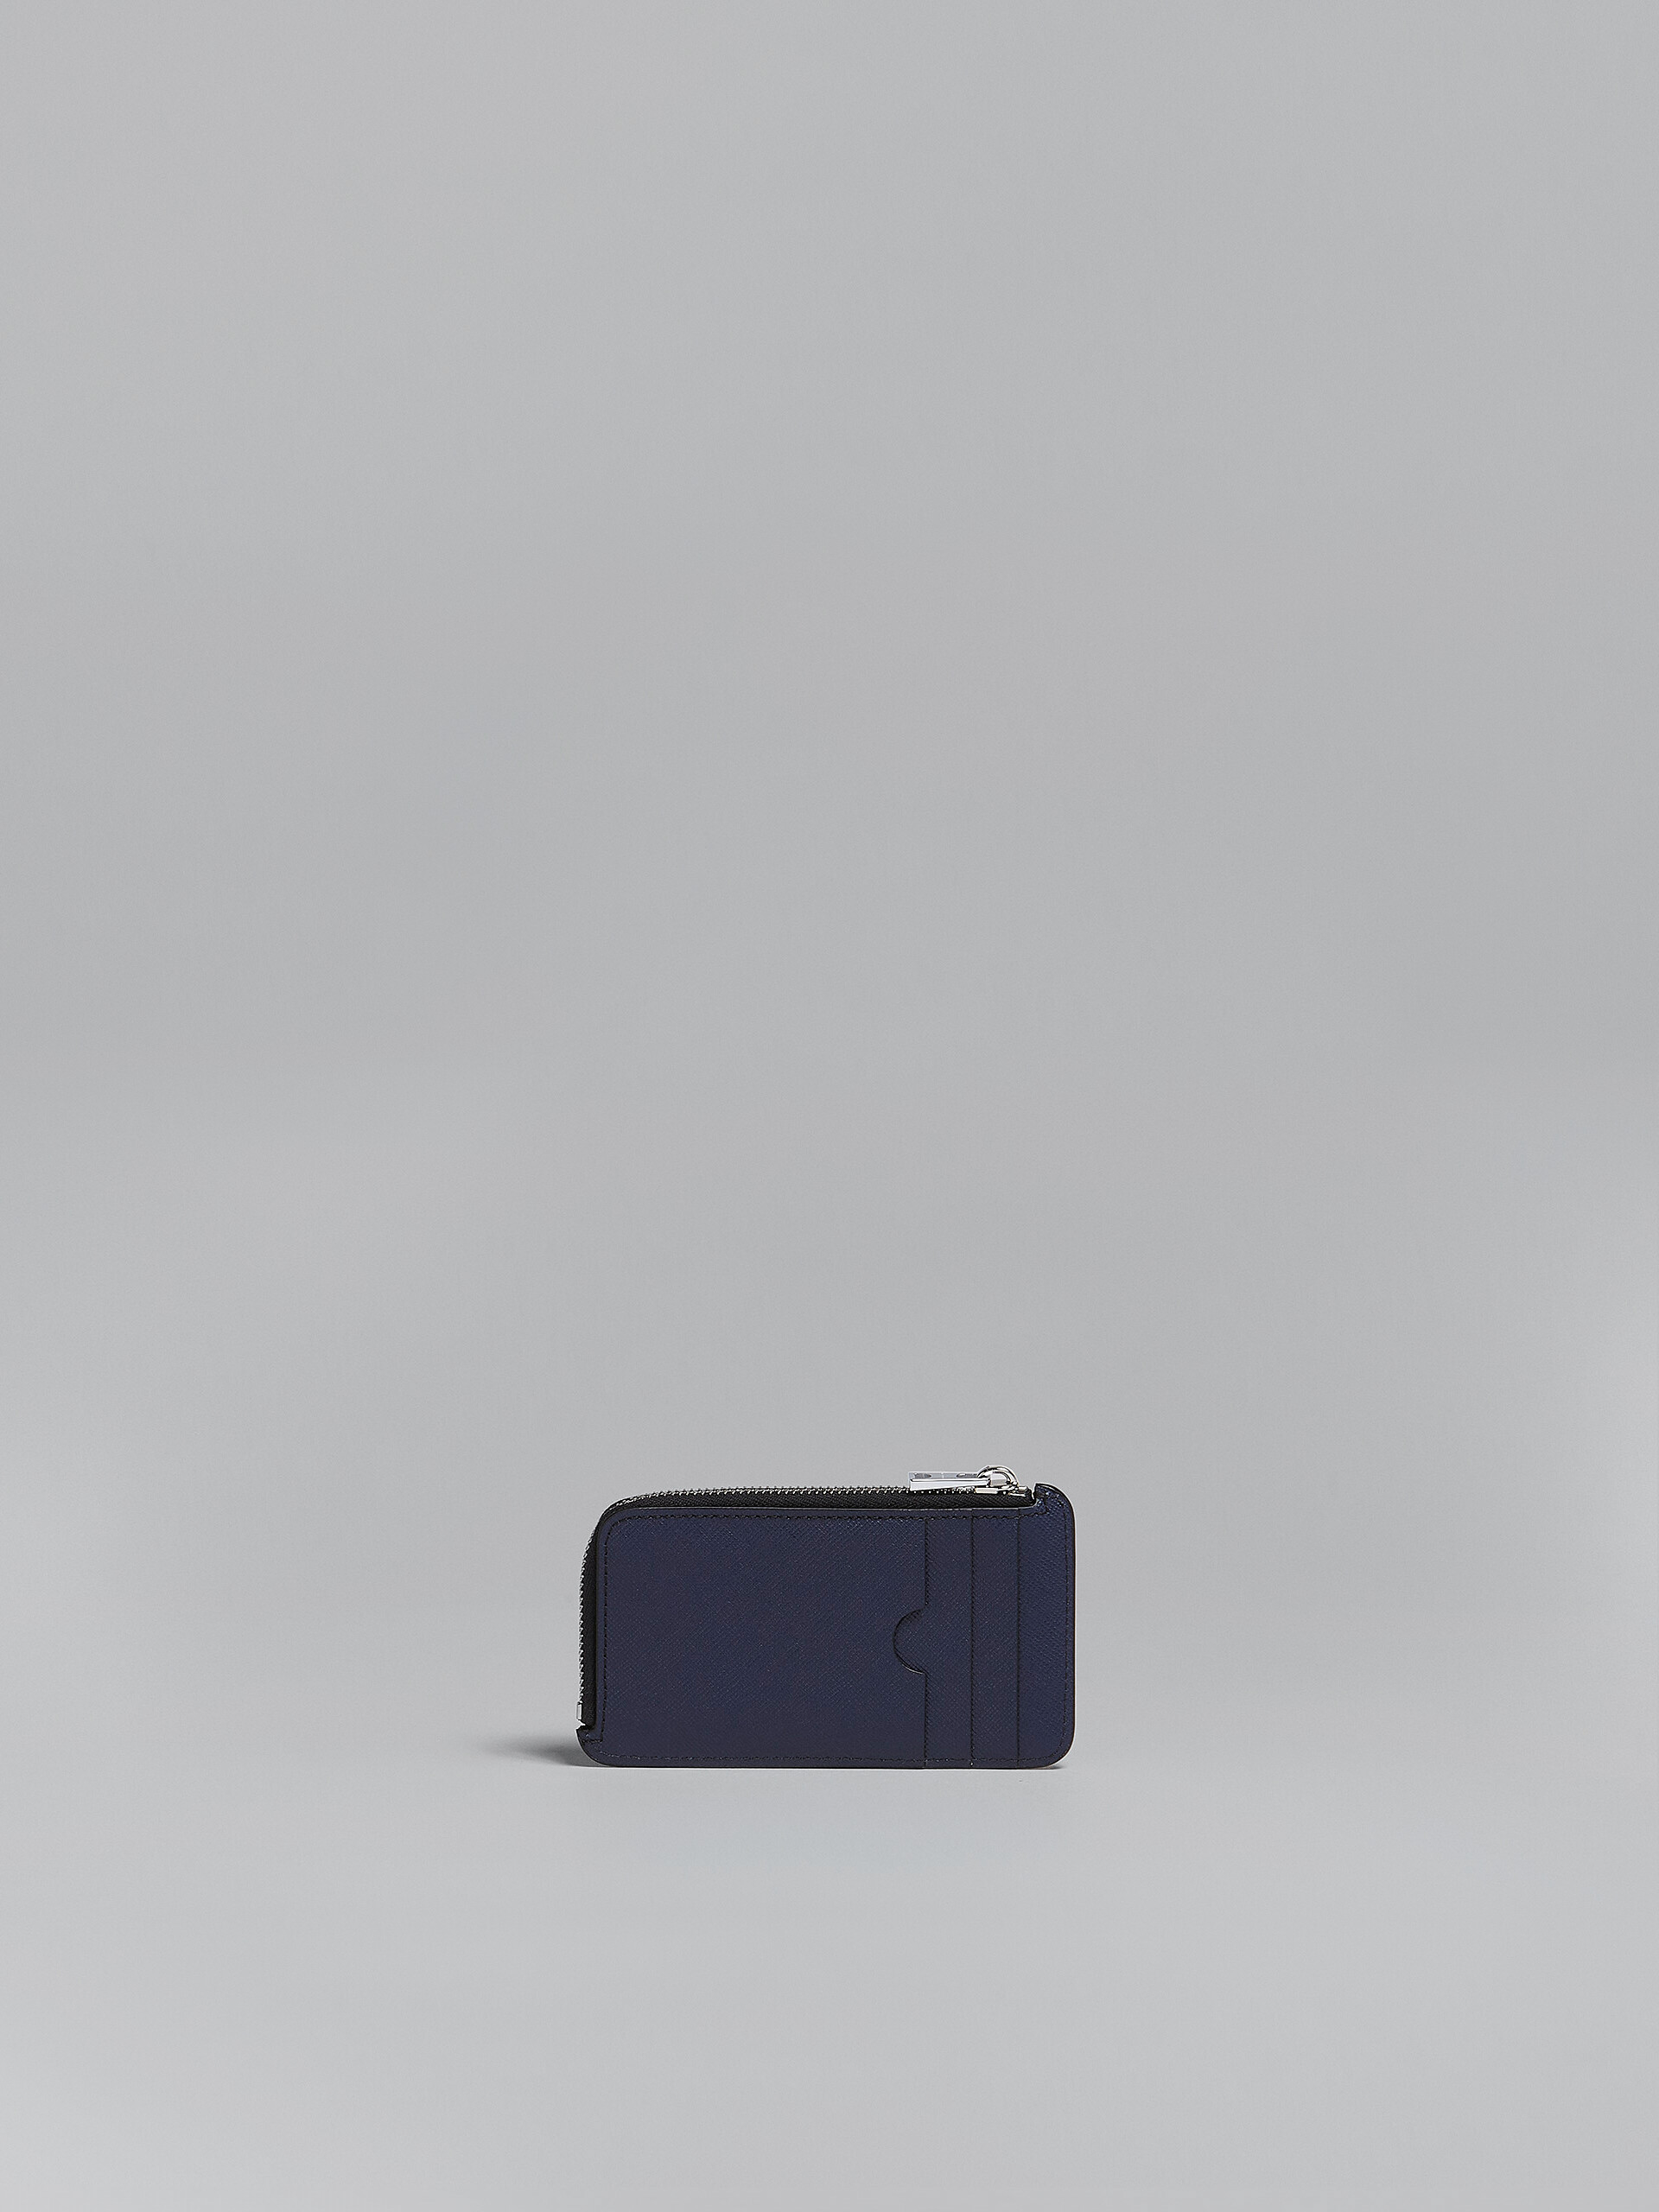 Tarjetero con cremallera perimetral de piel saffiano azul y negra - Carteras - Image 3